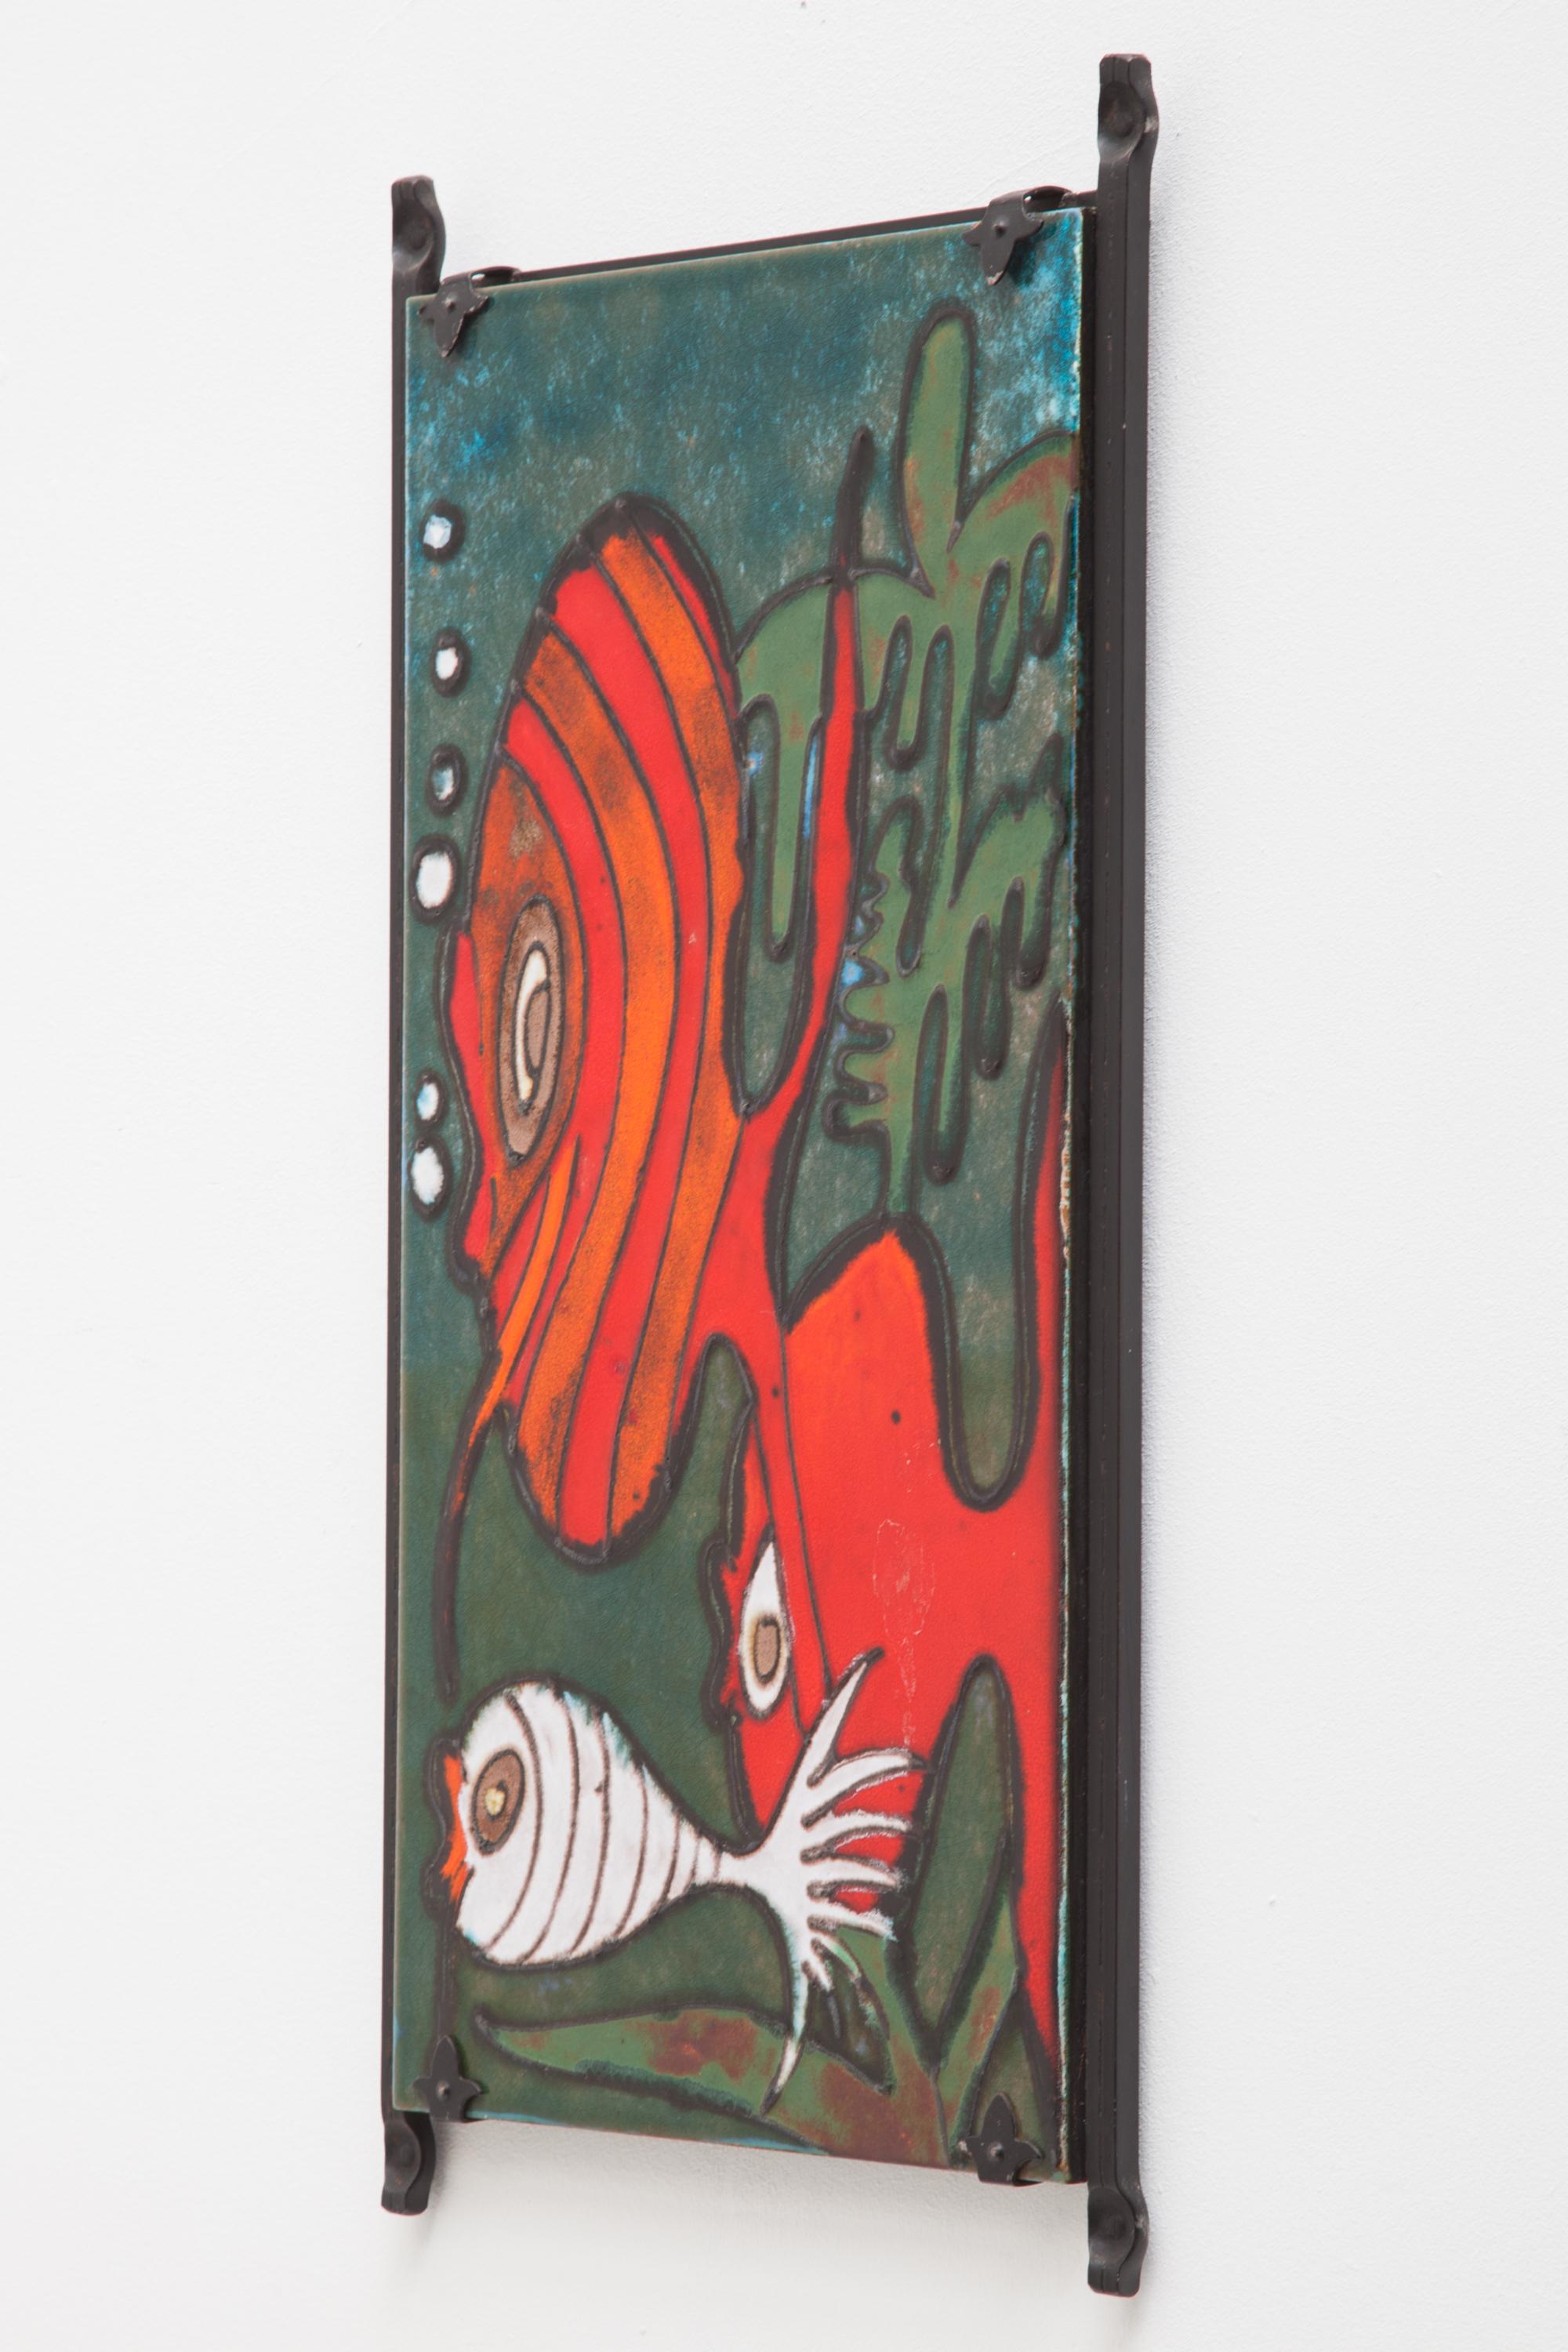 1970er Jahre Westdeutschland Wandstück von Heibi Keramik. Mit einem hellen, glänzenden, mehrfarbig glasierten Design aus drei Fischen und Algen auf einer Fliese in einem schmiedeeisernen Rahmen. Trägt noch das Originaletikett.